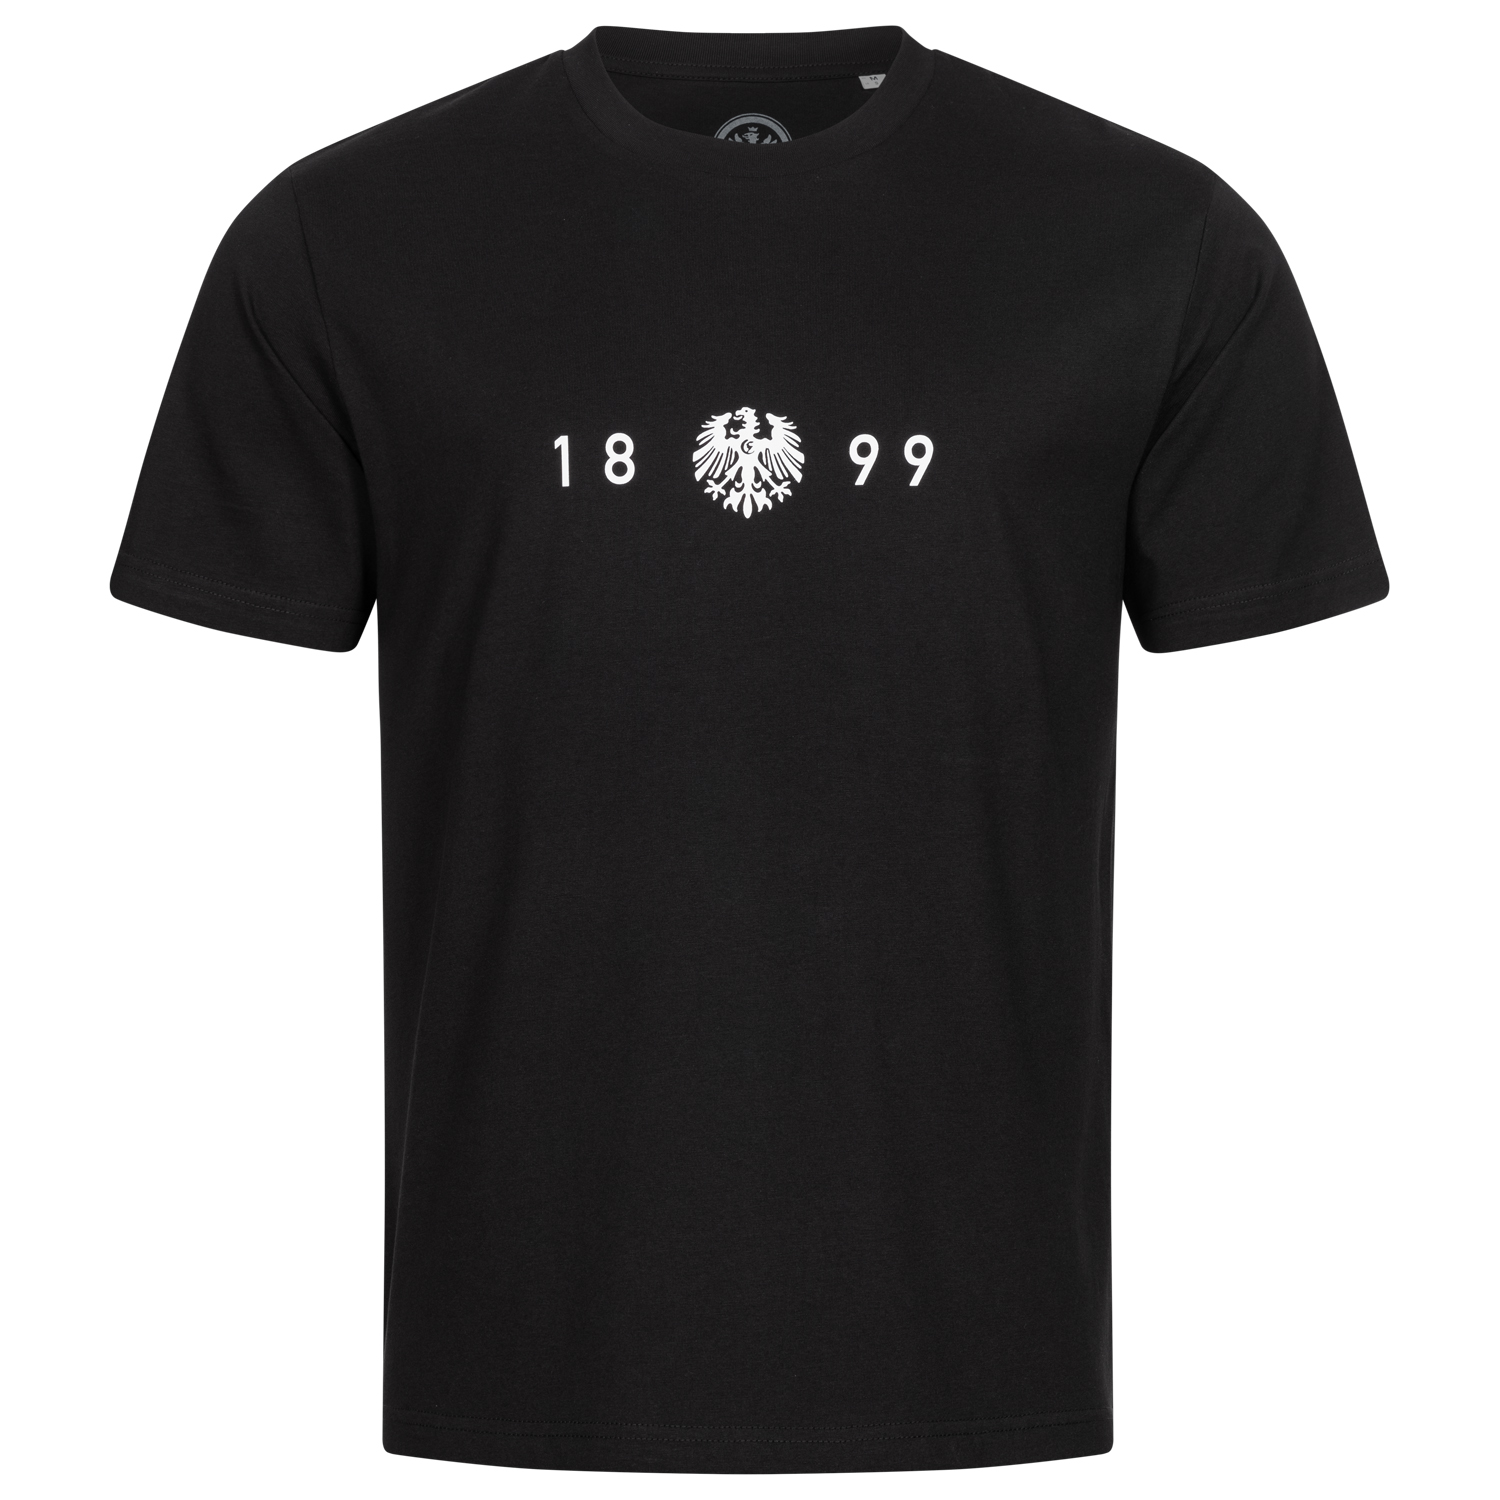 Bild 1: Unisex T-Shirt Sportgemeinde 1899